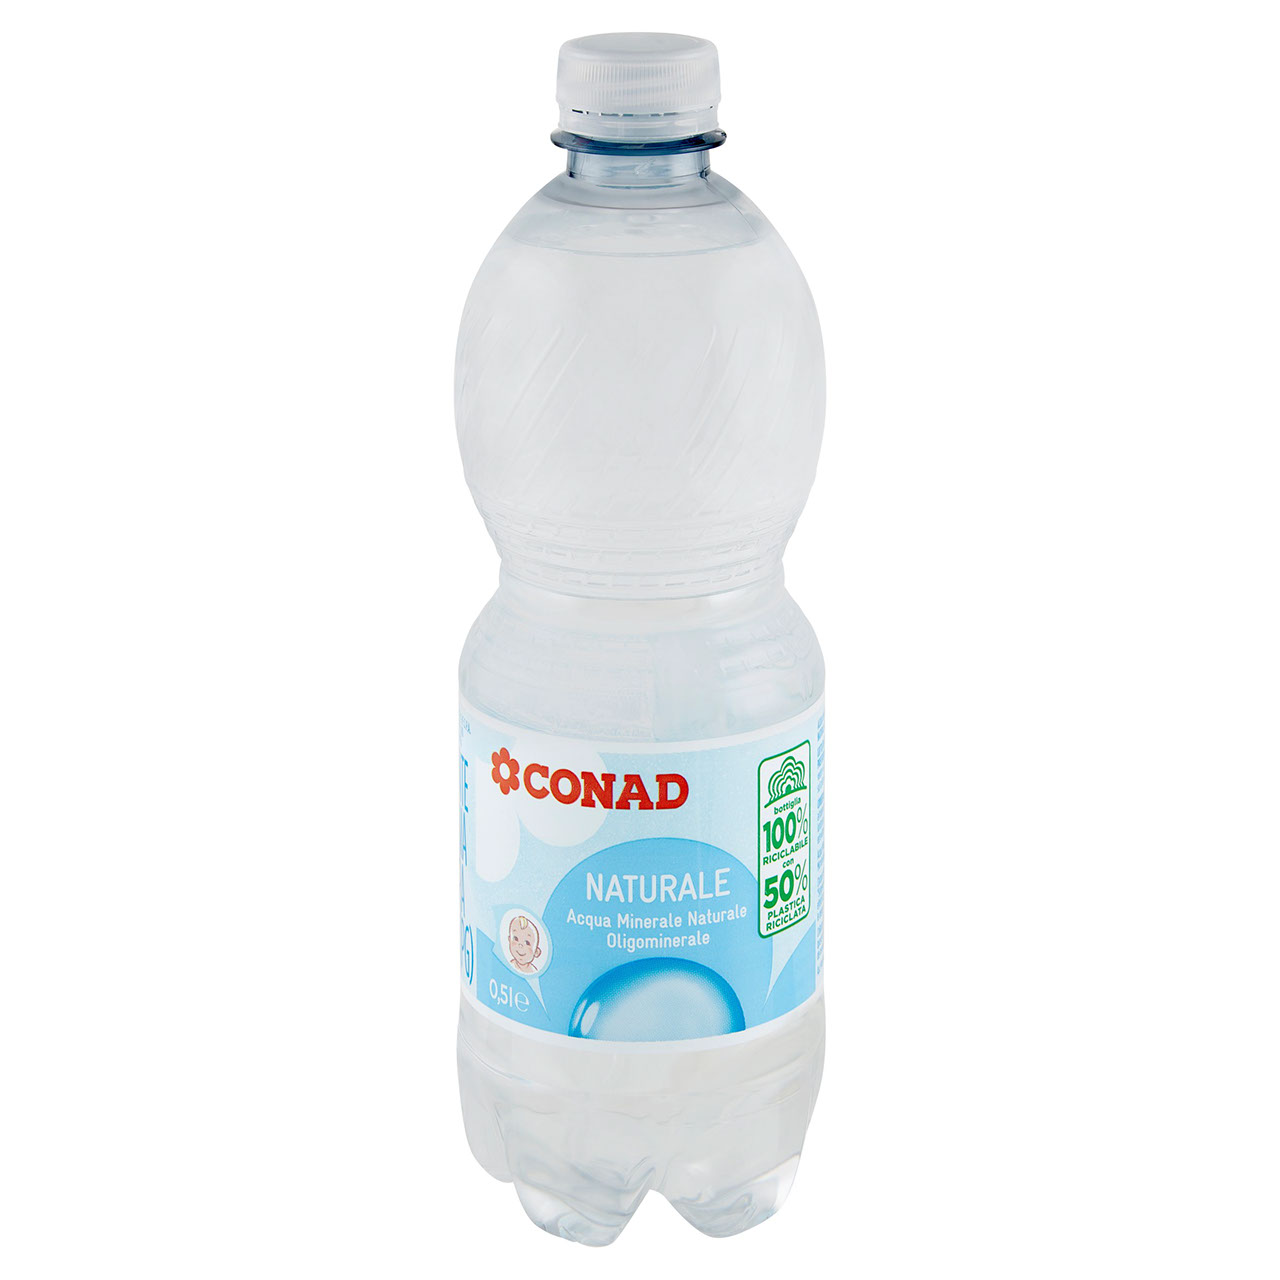 Acqua Minerale Naturale Conad in vendita online